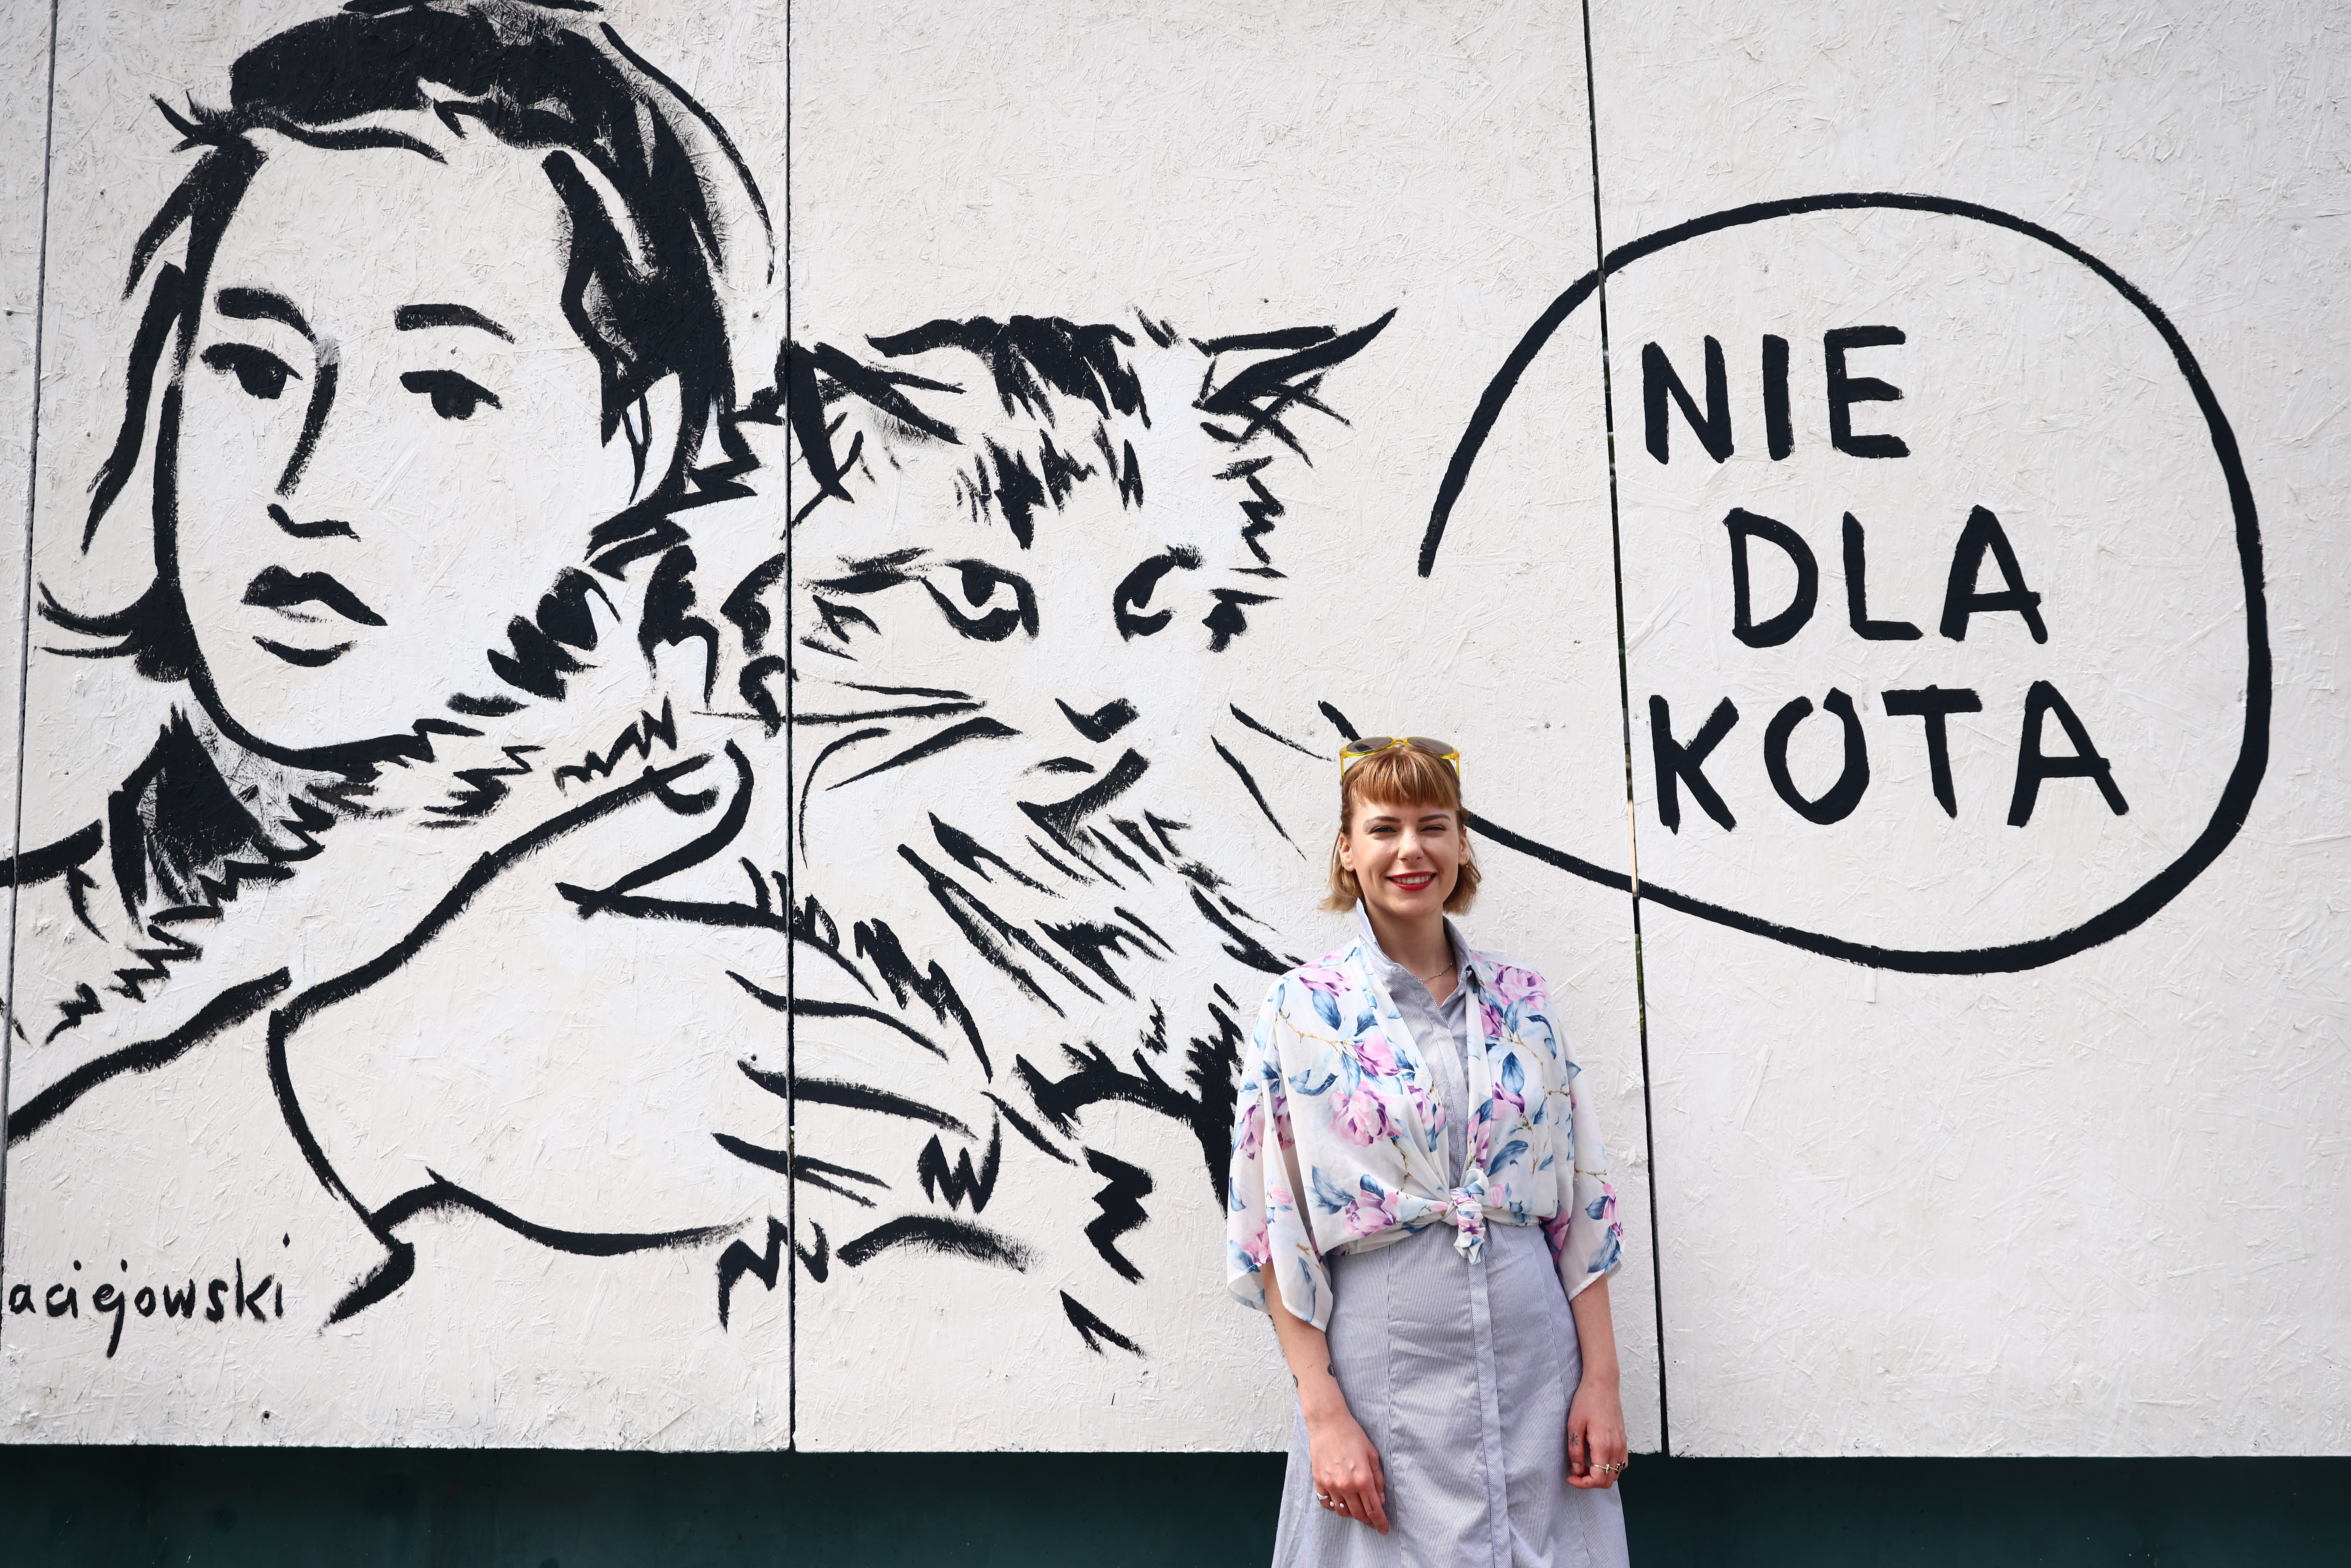 Czarno-biały mural z cytatem: ,,Nie dla kota". Przechodnie chętnie fotografują się na jego tle - tak jak ta młoda dziewczyna.